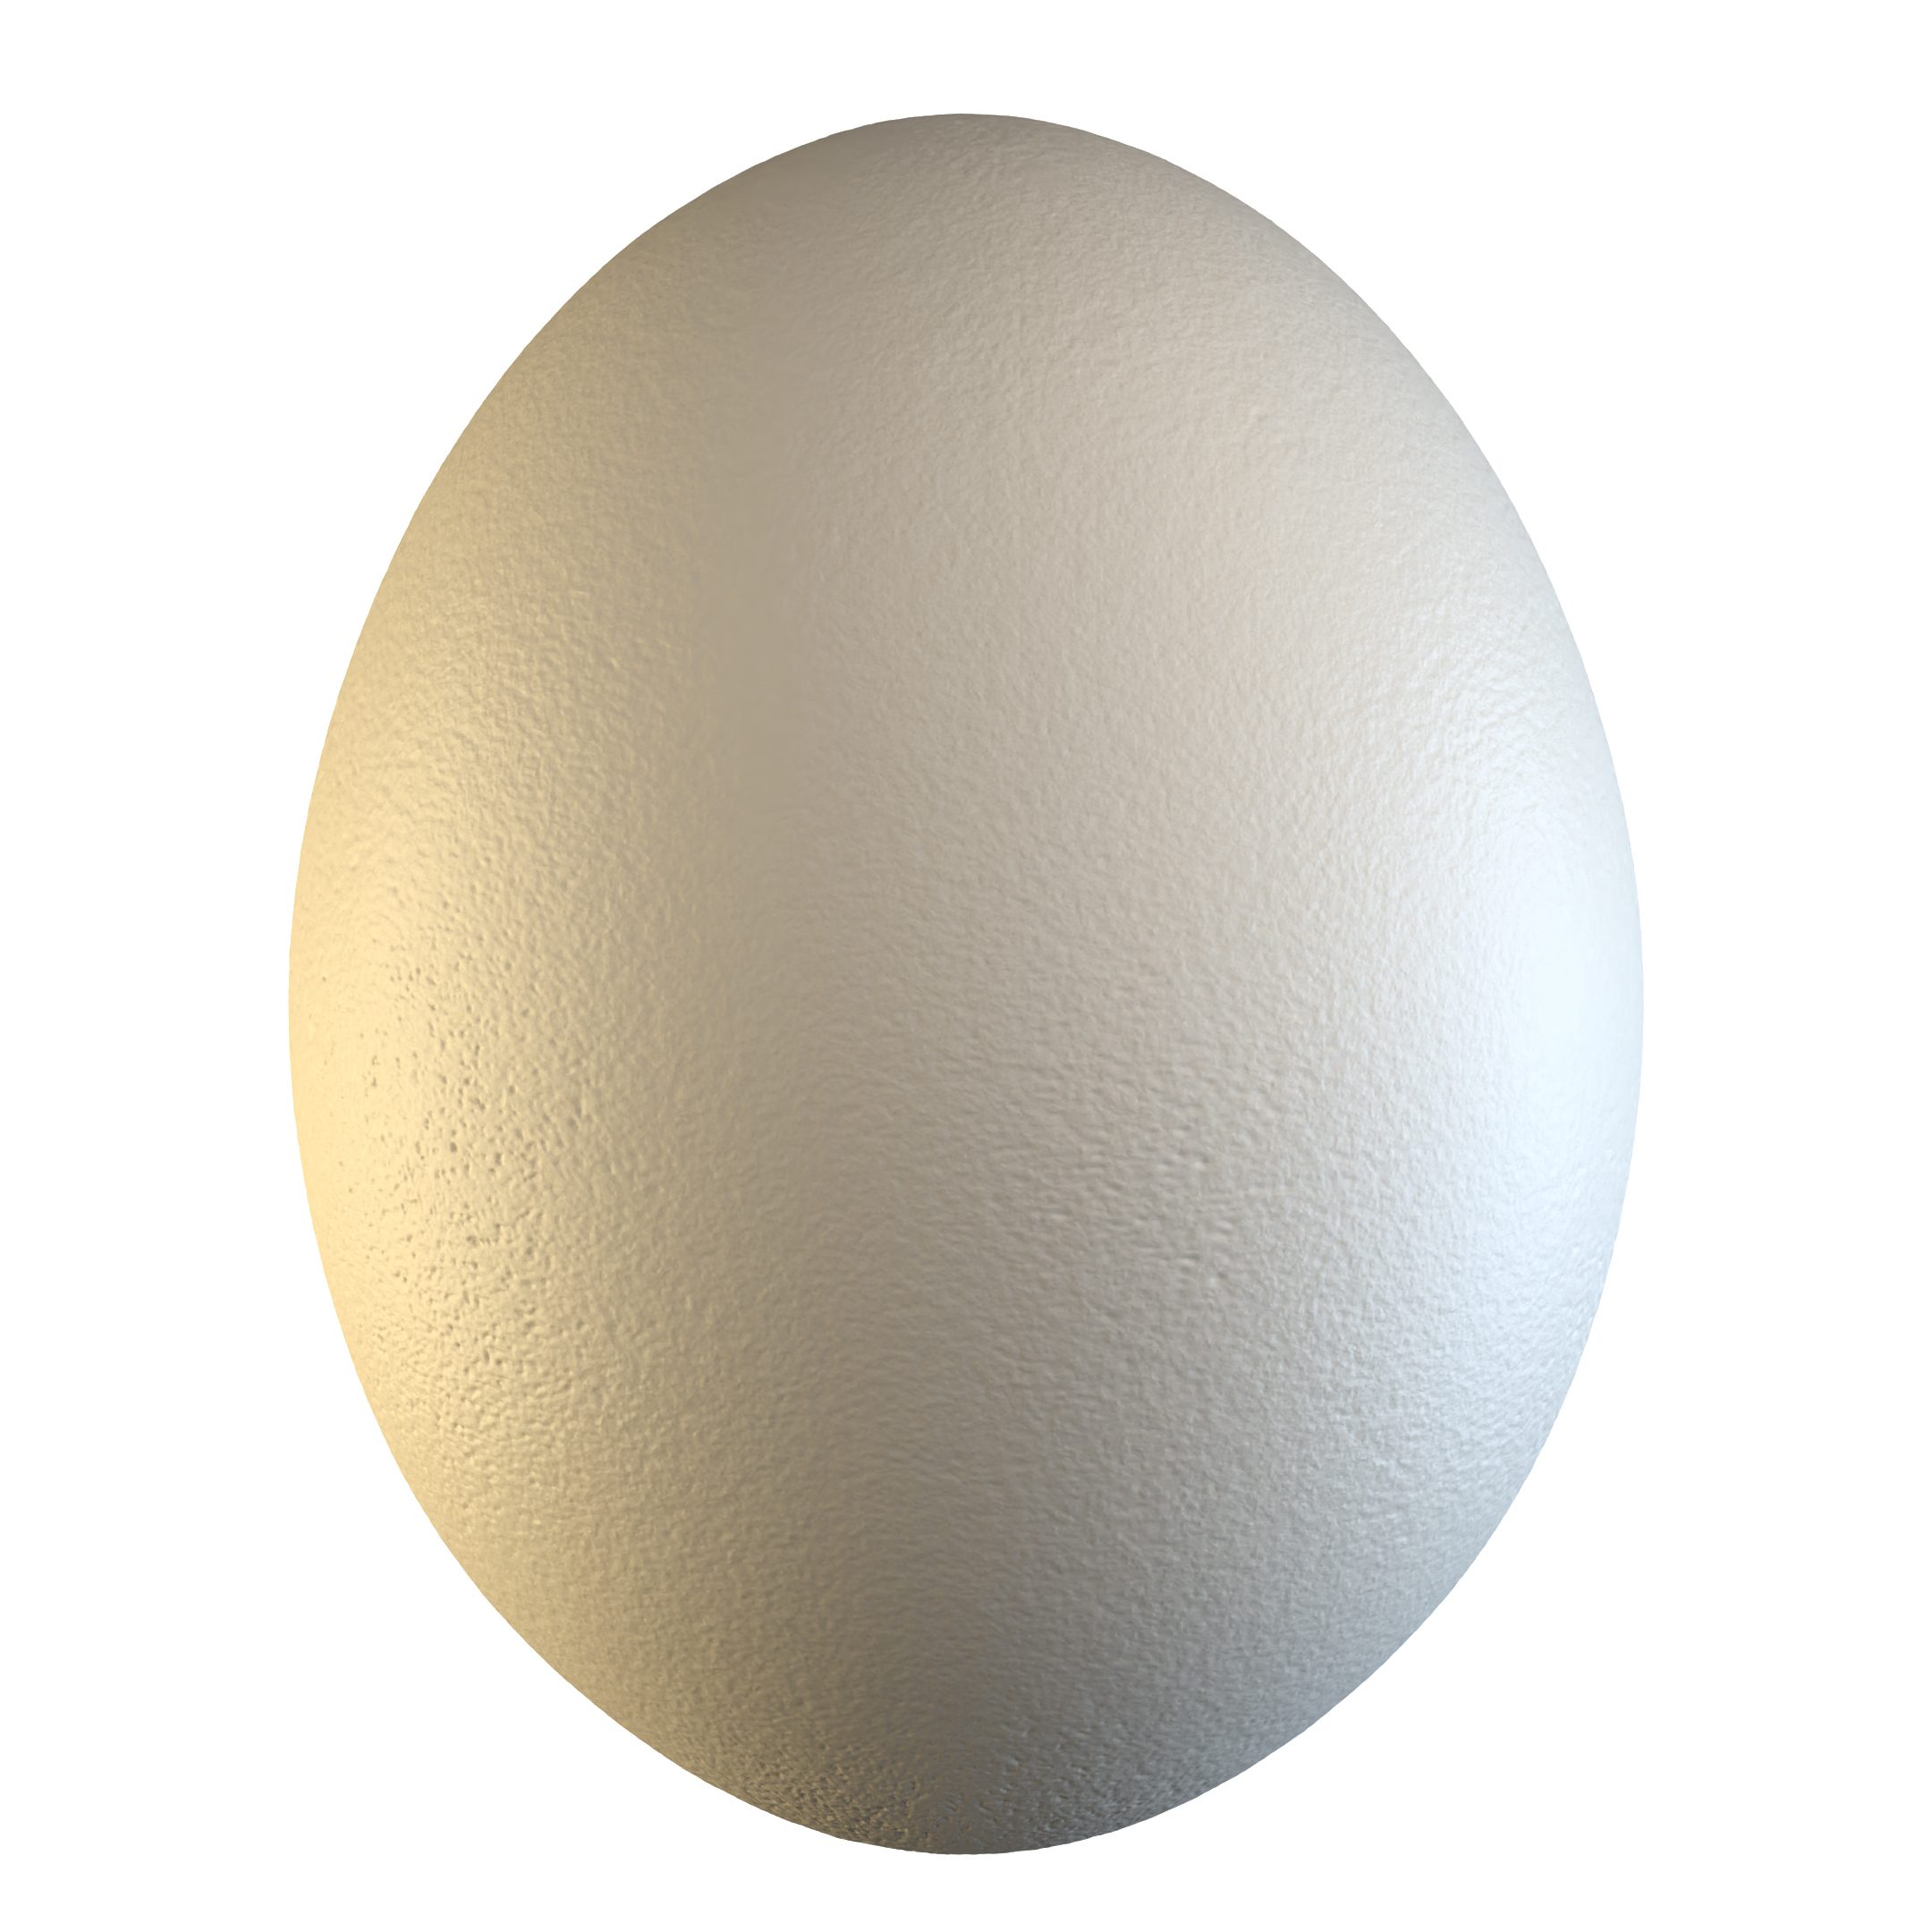 Elephant Bird Egg